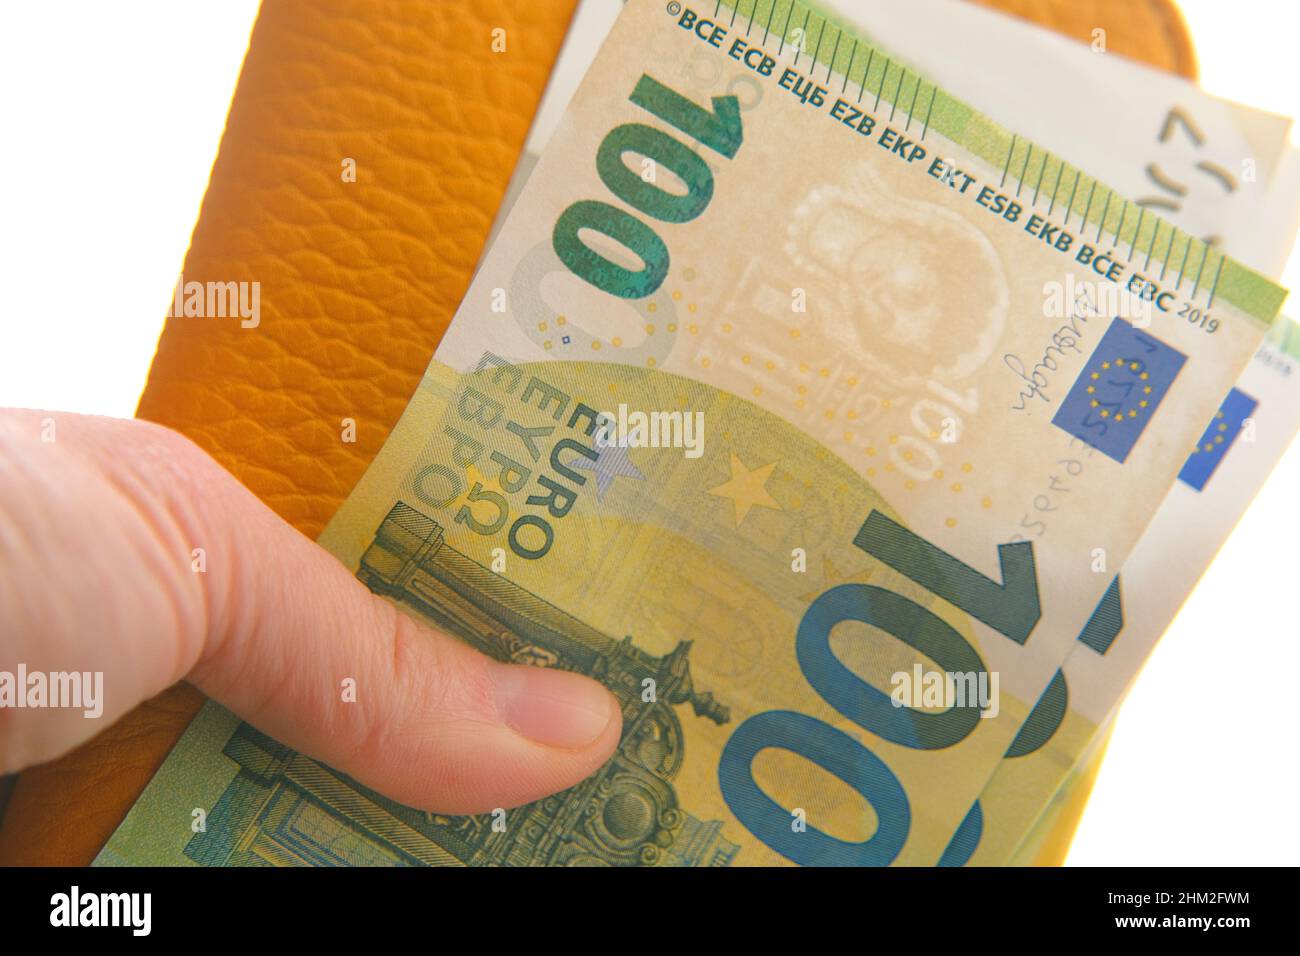 Portafoglio con valuta Money.Euro. Euro fattura in una borsa gialla in mani femminili su uno sfondo. Moneta dell'Unione europea. Foto Stock